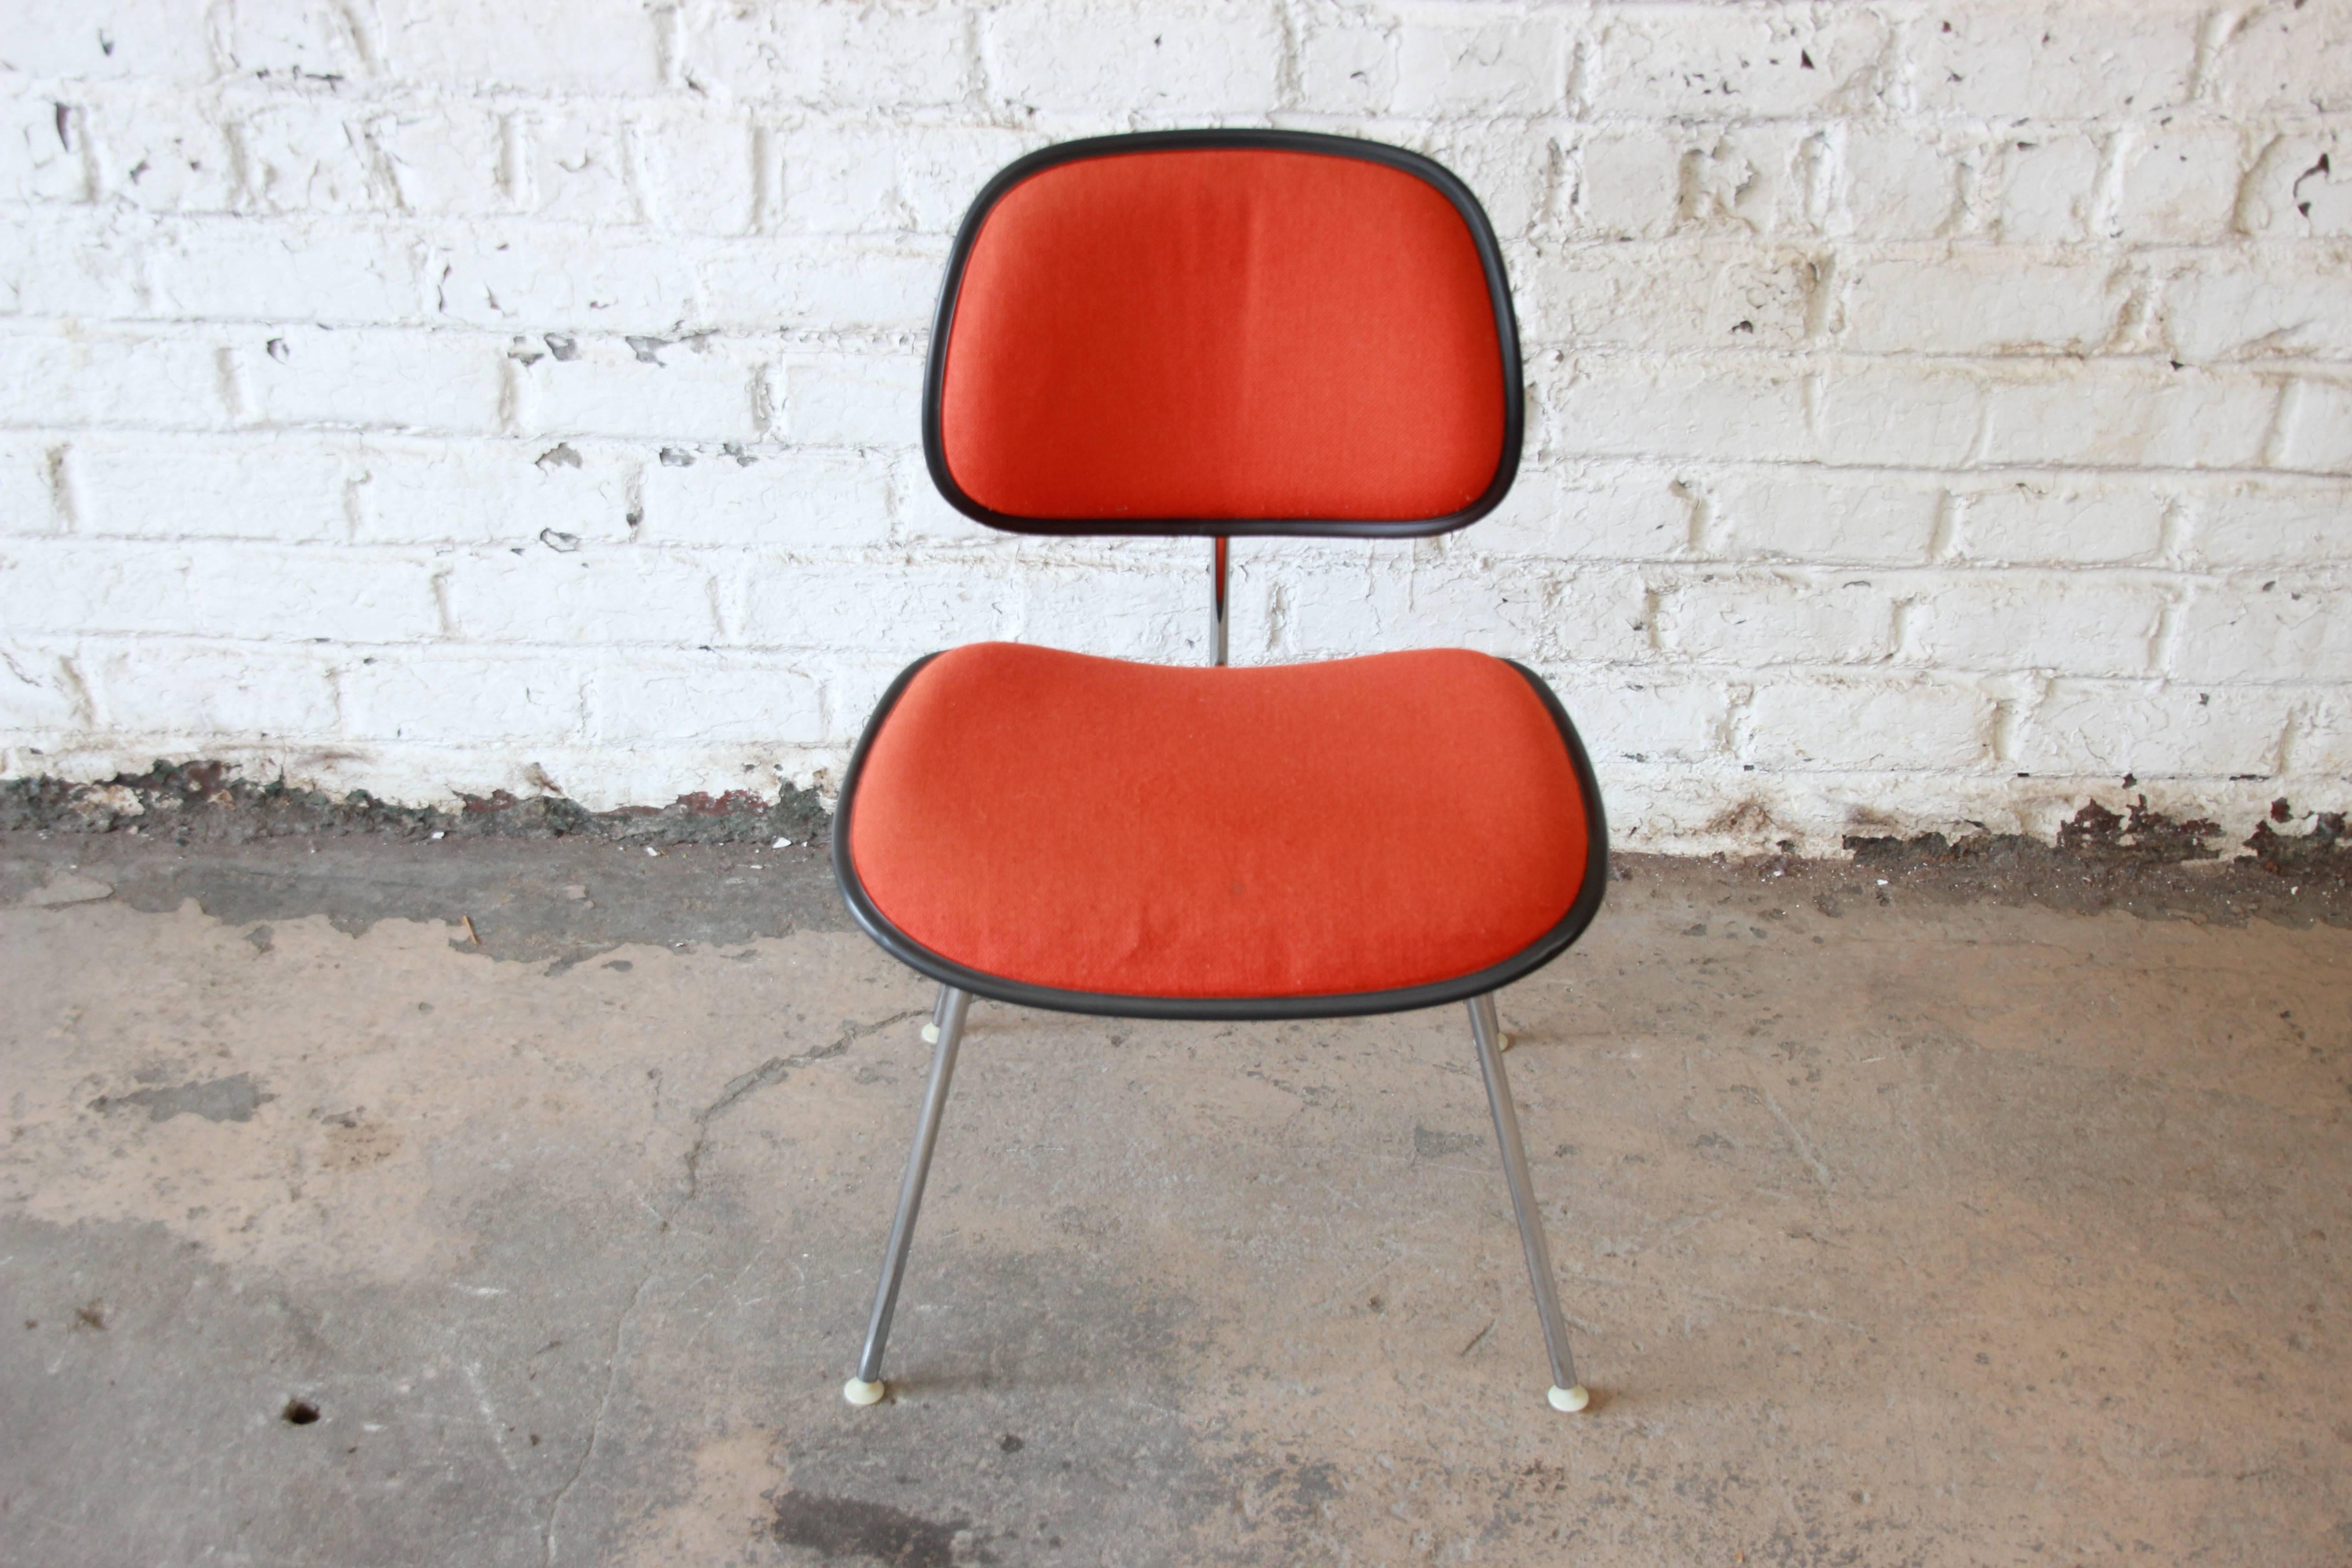 Ein sehr schöner EC-127 DCM Beistellstuhl:: entworfen von Charles und Ray Eames für Herman Miller:: ca. 1971-1981. Die Sitze und Rückenlehnen sind aus Kunststoff geformt und mit hübscher oranger Wolle gepolstert. Beine und Rahmen sind aus massivem::